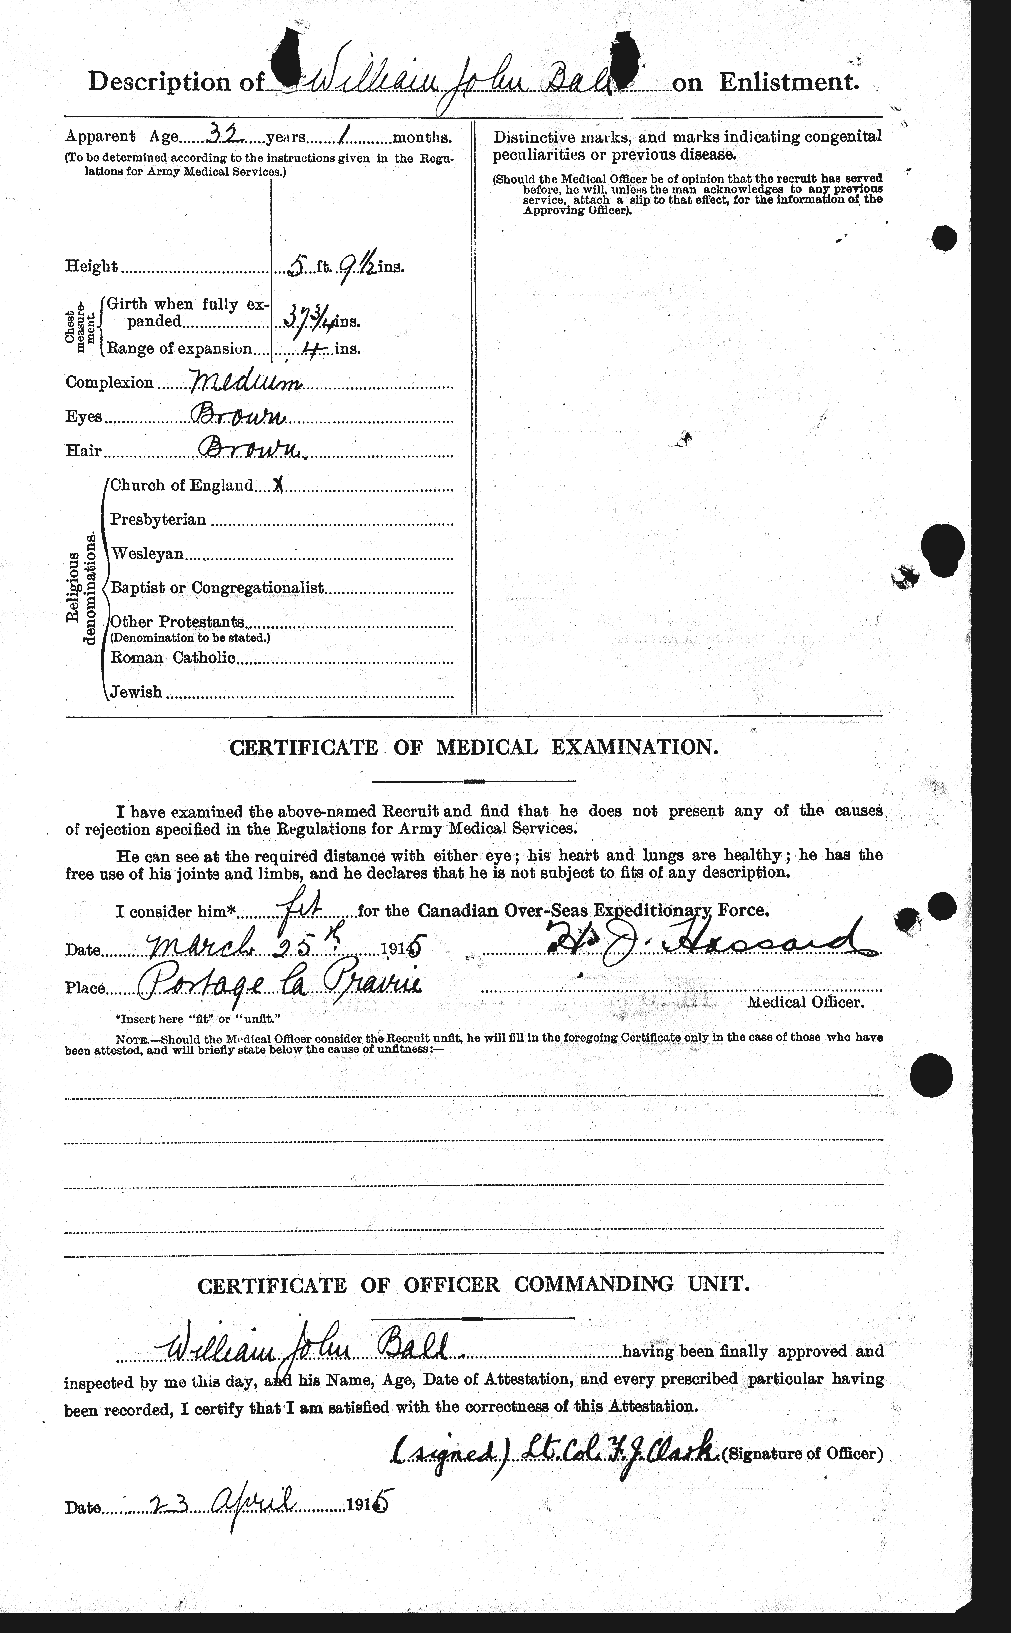 Dossiers du Personnel de la Première Guerre mondiale - CEC 225544b